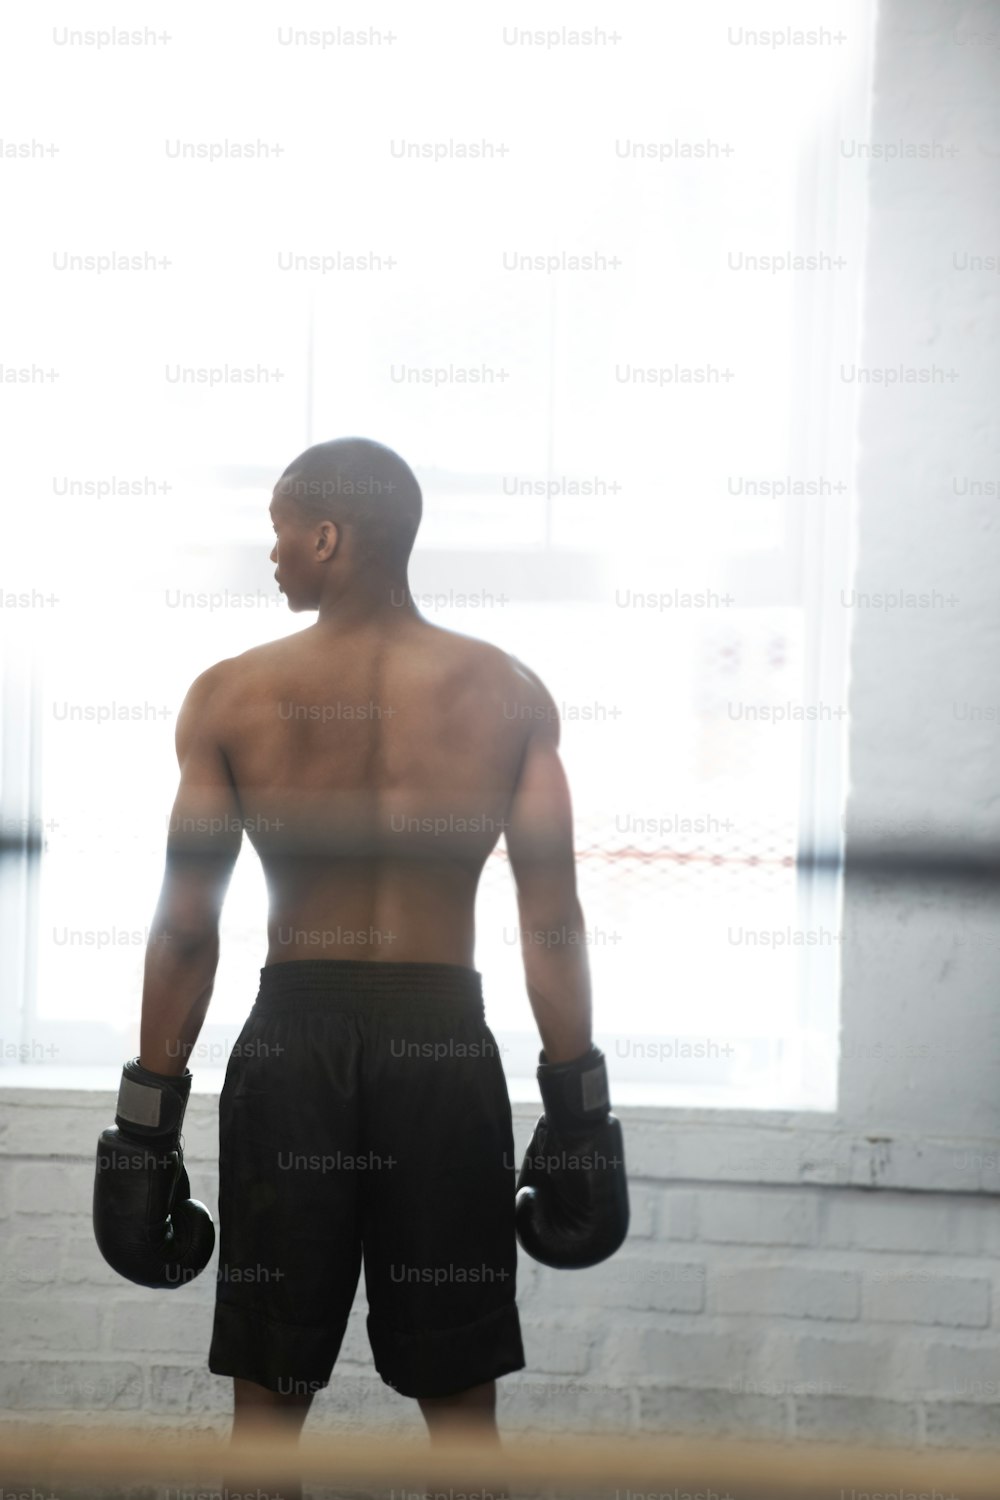 Un hombre parado en un ring de boxeo con guantes de boxeo